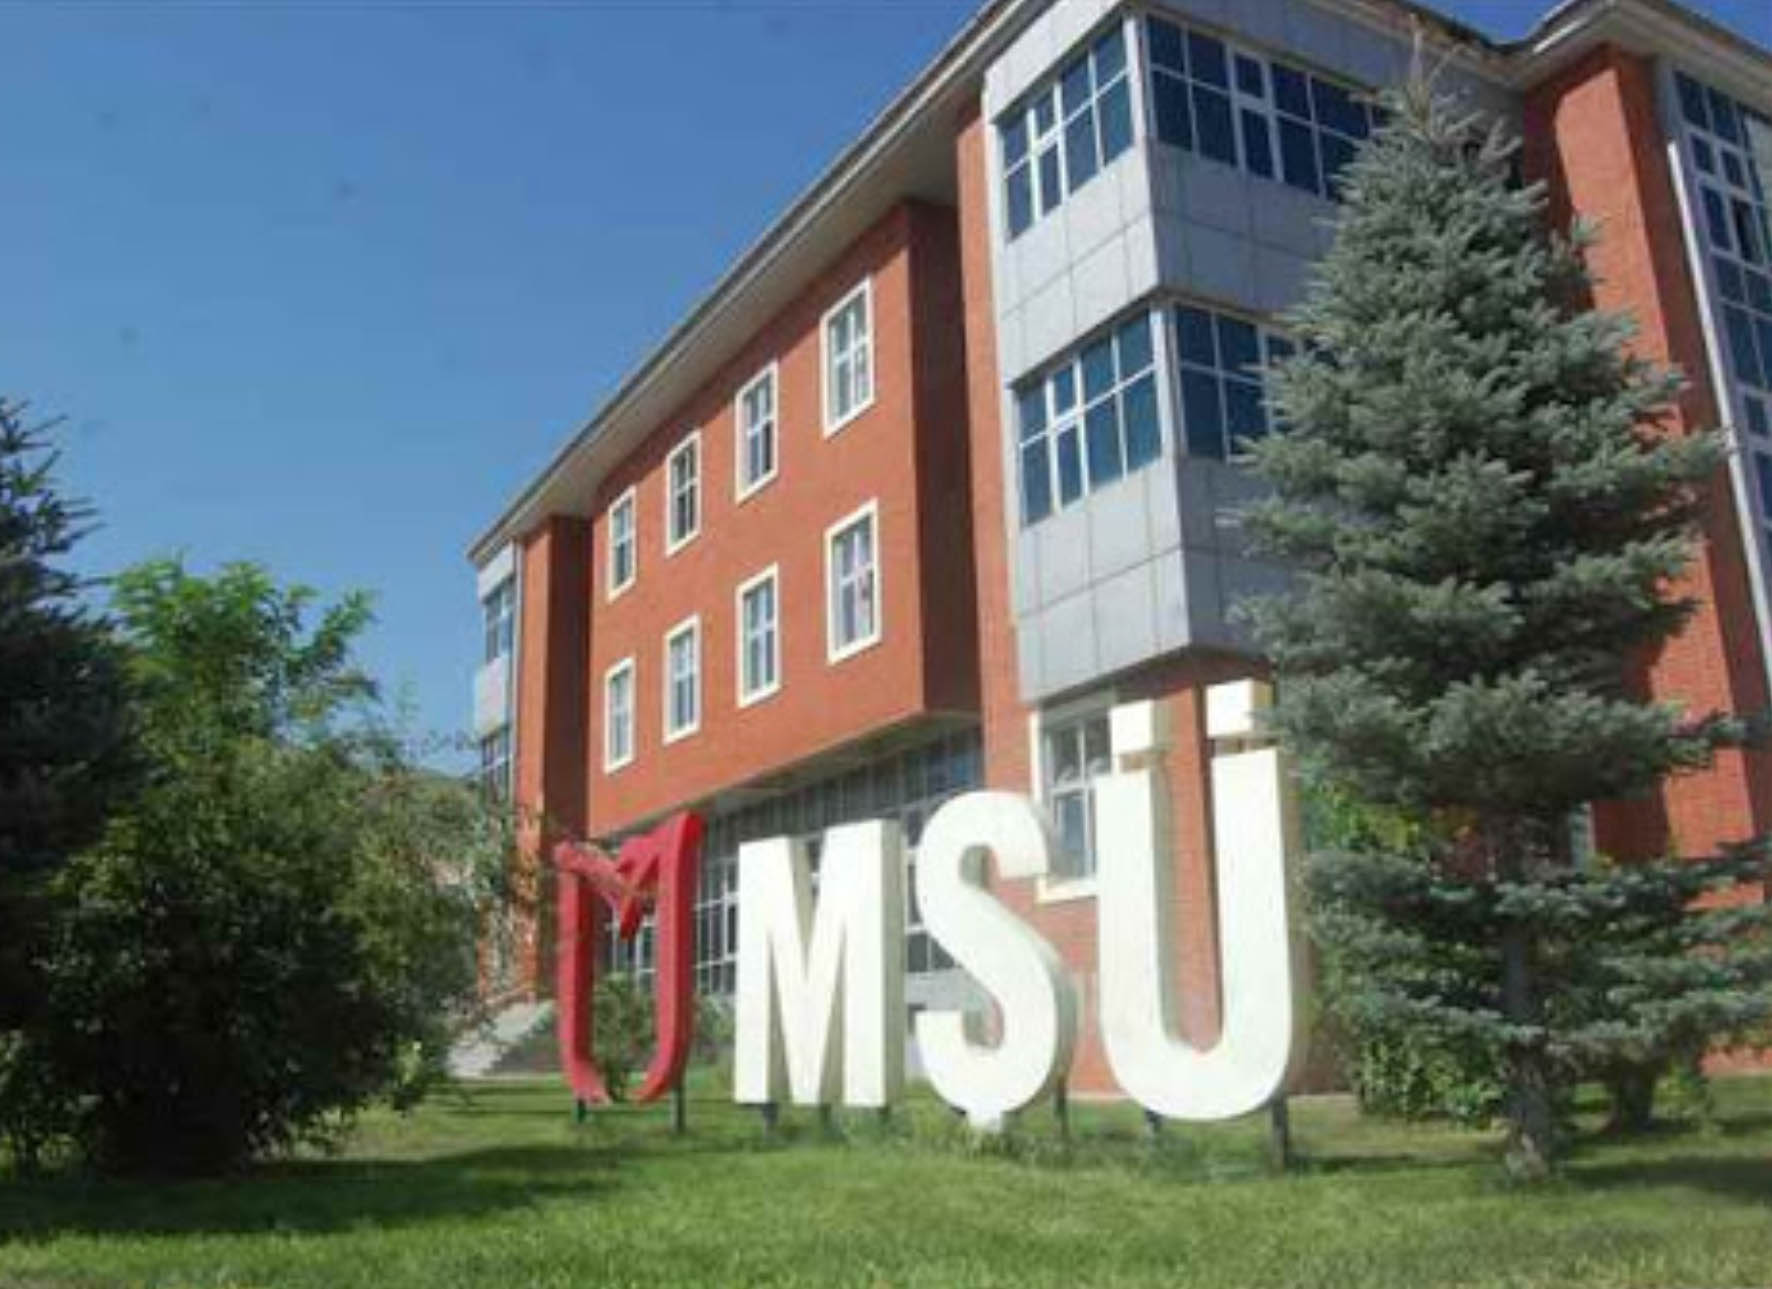 Stipendirane razmjene studenata i osoblja Univerziteta u Bihaću sa Univerzitetom Muş Alparslan u Turskoj